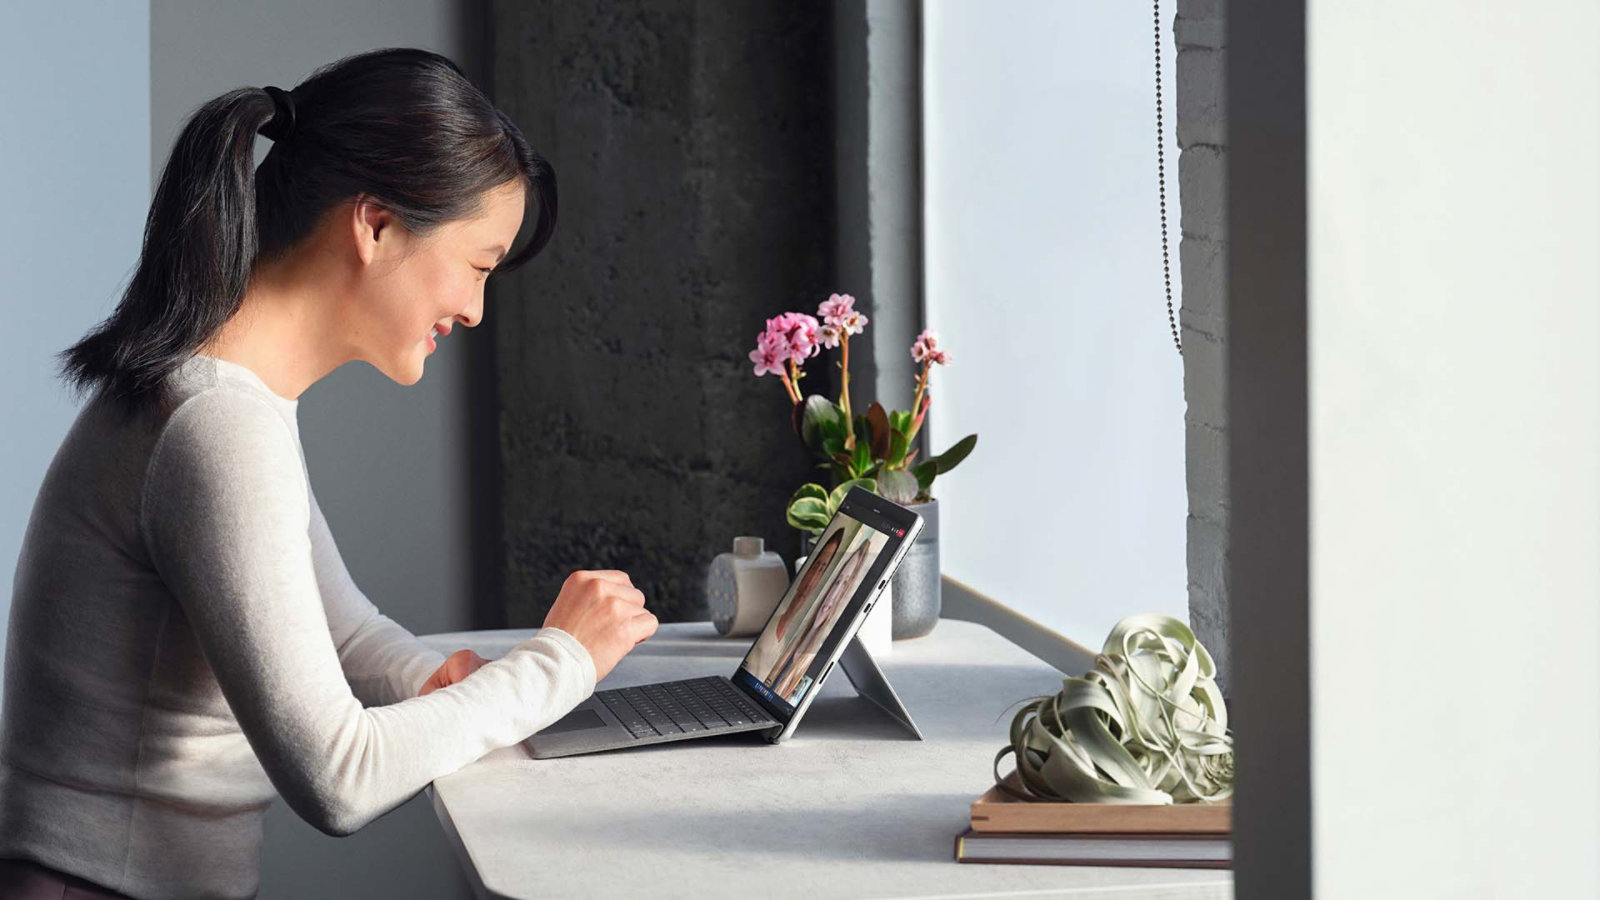 คนคนหนึ่งกำลังสนทนาผ่าน Microsoft Teams จากอุปกรณ์ Surface Pro 8 ในการตั้งค่าการทำงานจากระยะไกล